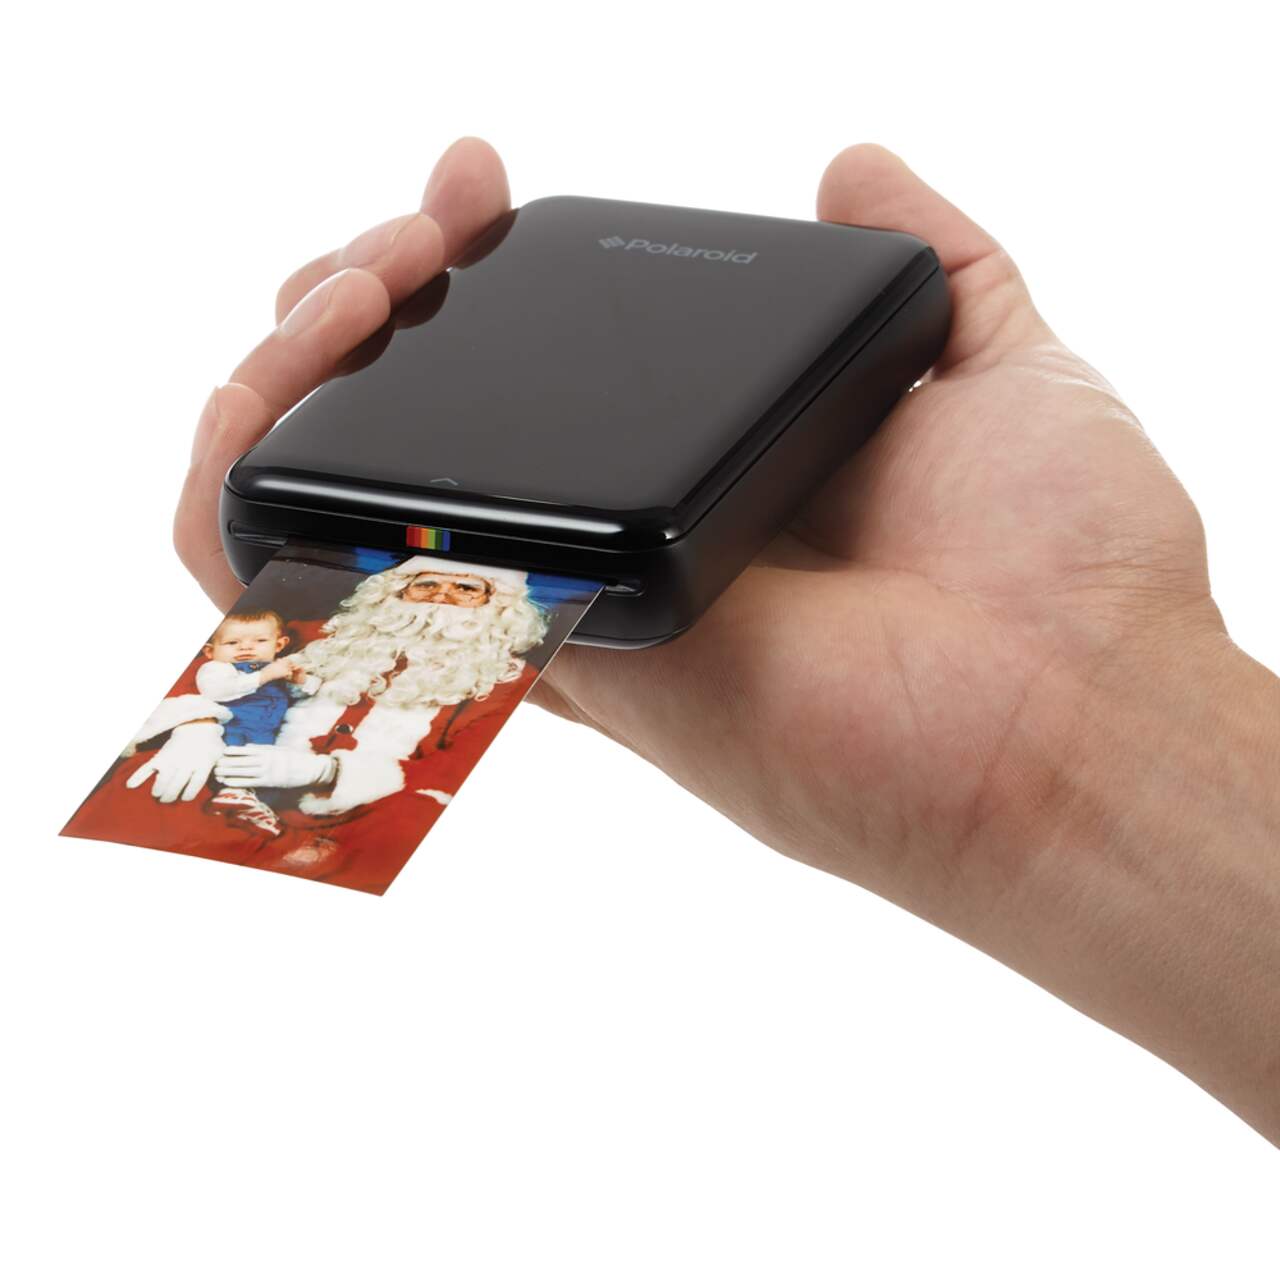 Review: Polaroid Zip portable printer